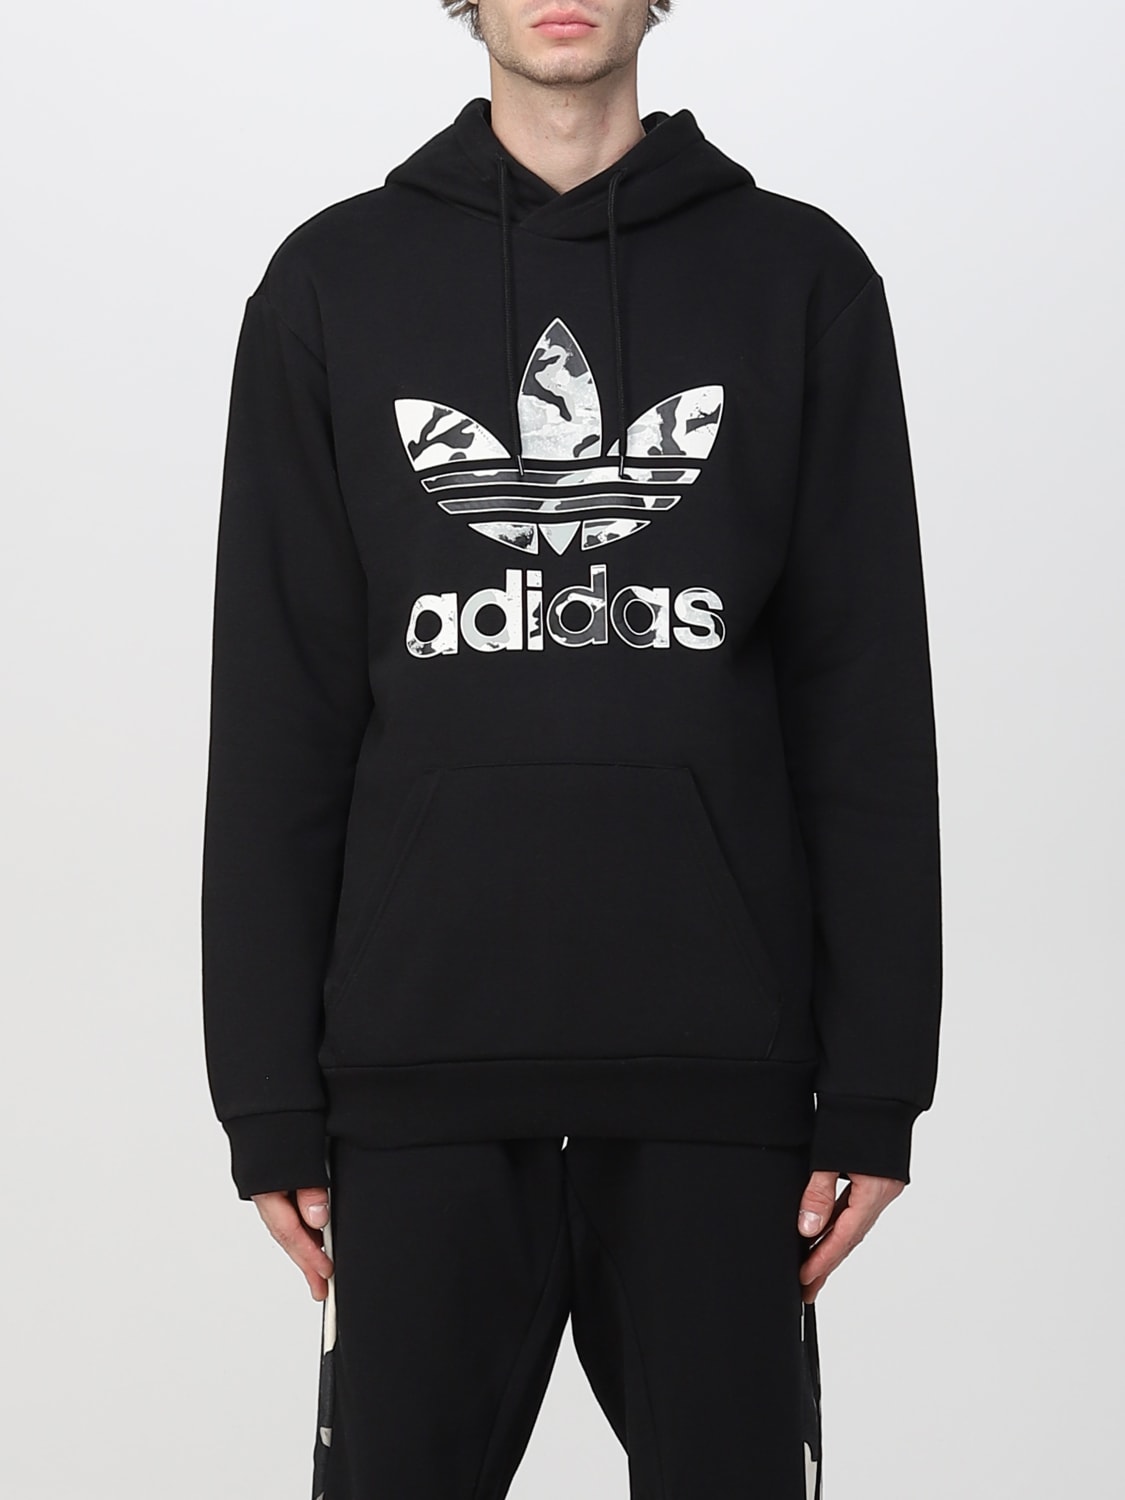 Ontoegankelijk Overvloedig aanwijzing ADIDAS ORIGINALS: sweatshirt for man - Black | Adidas Originals sweatshirt  HK2803 online on GIGLIO.COM